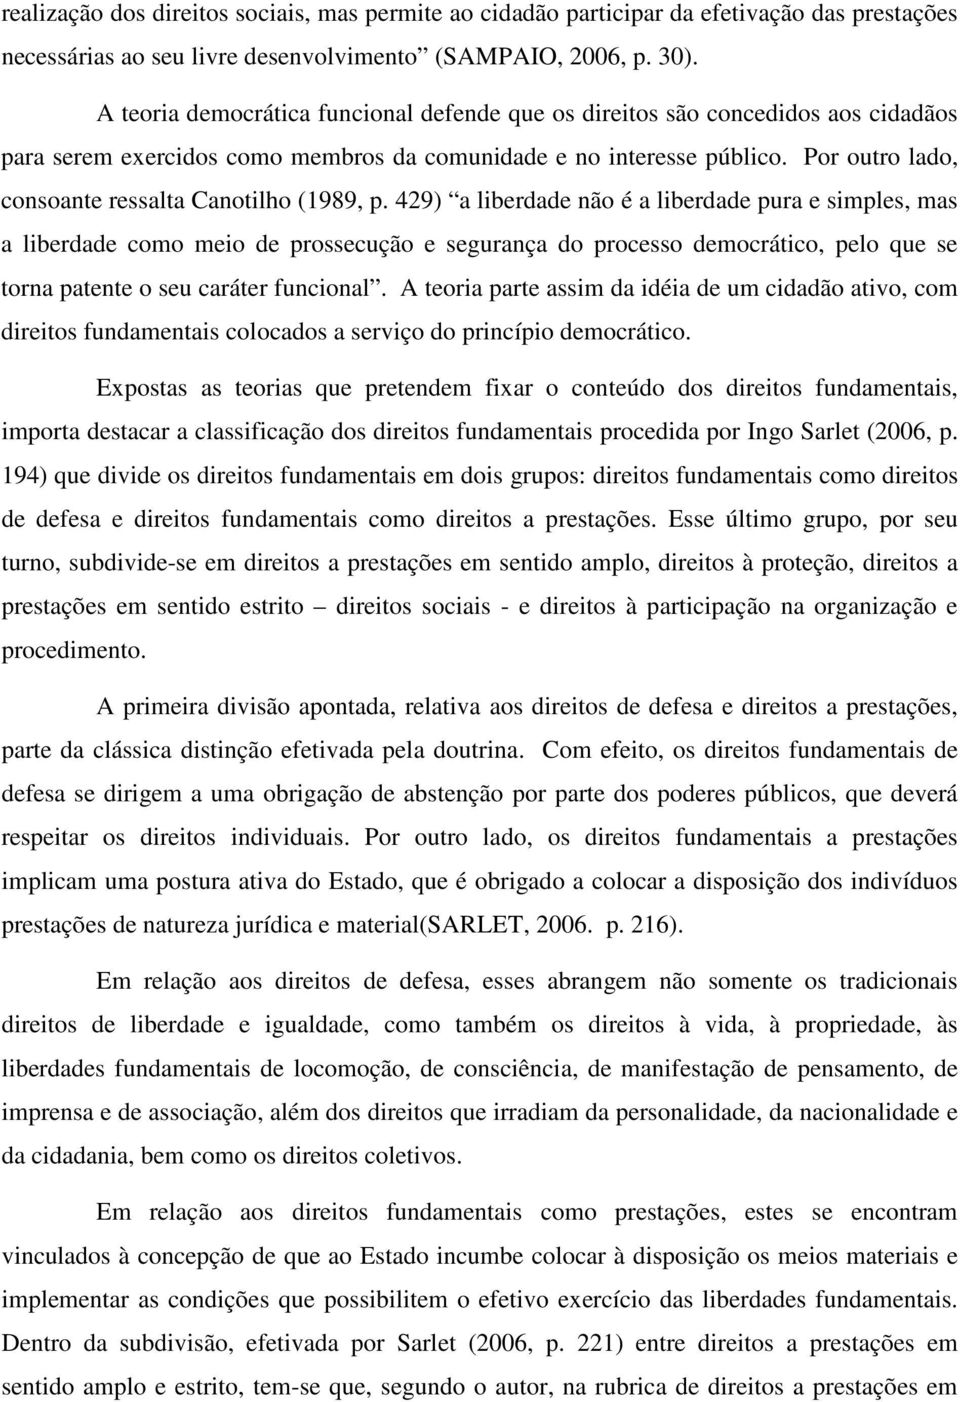 Por outro lado, consoante ressalta Canotilho (1989, p.